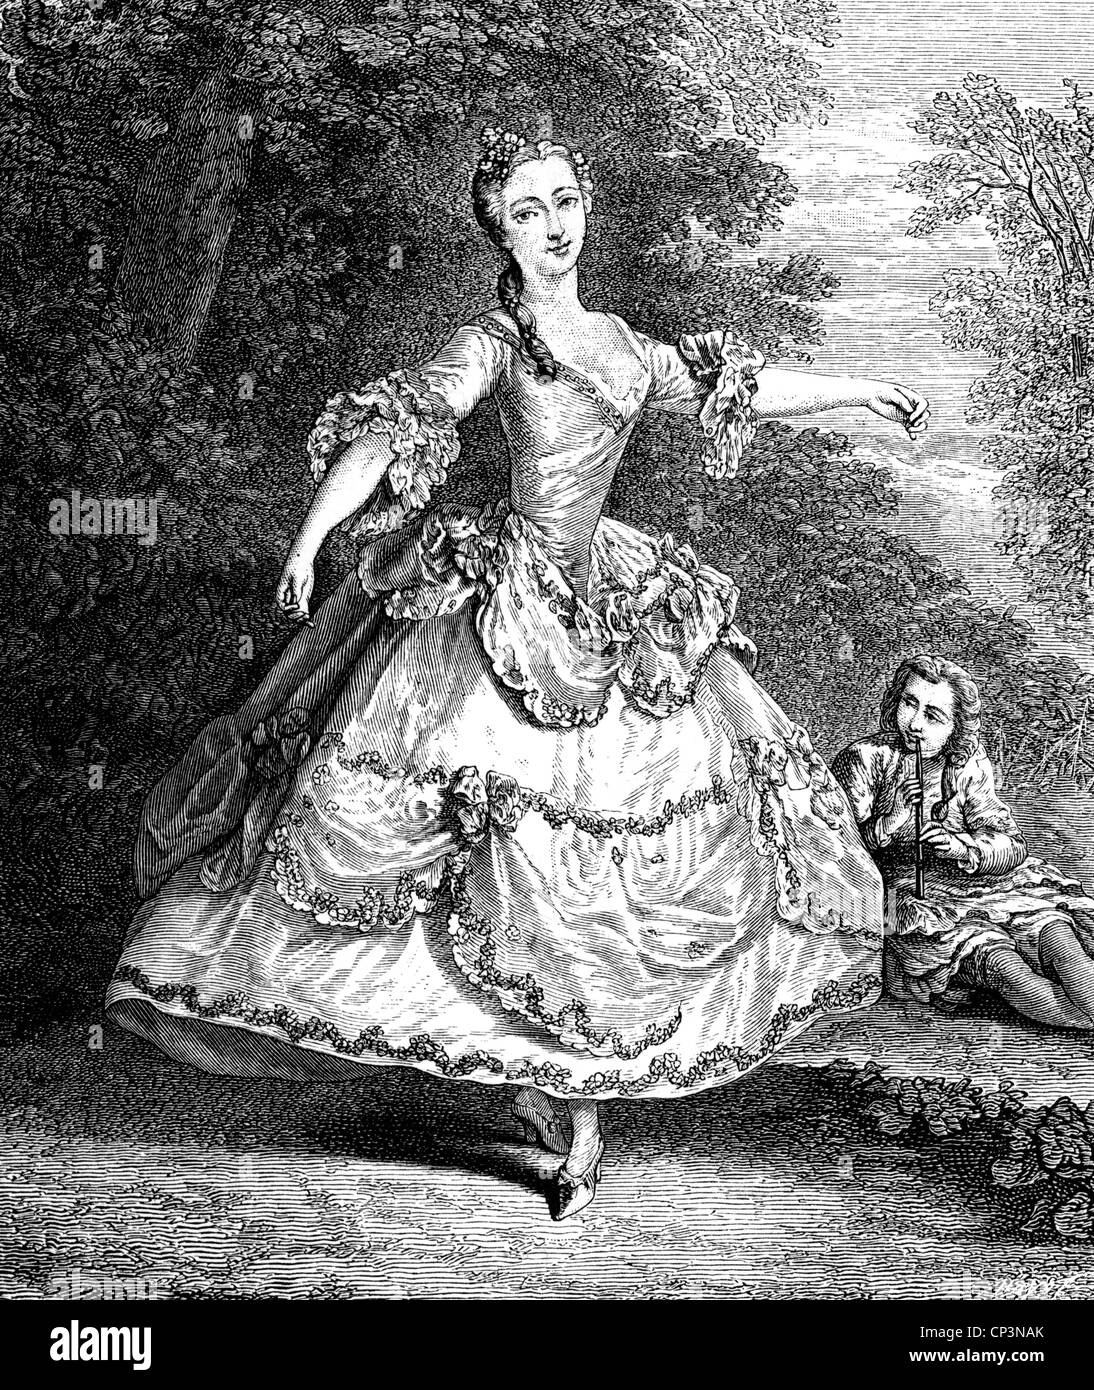 Salle, Marie, vers 1707 - 27.7.1756, danseuse française, danse, gravure sur bois, XIXe siècle, après peinture de Nicolas Lancret, Banque D'Images